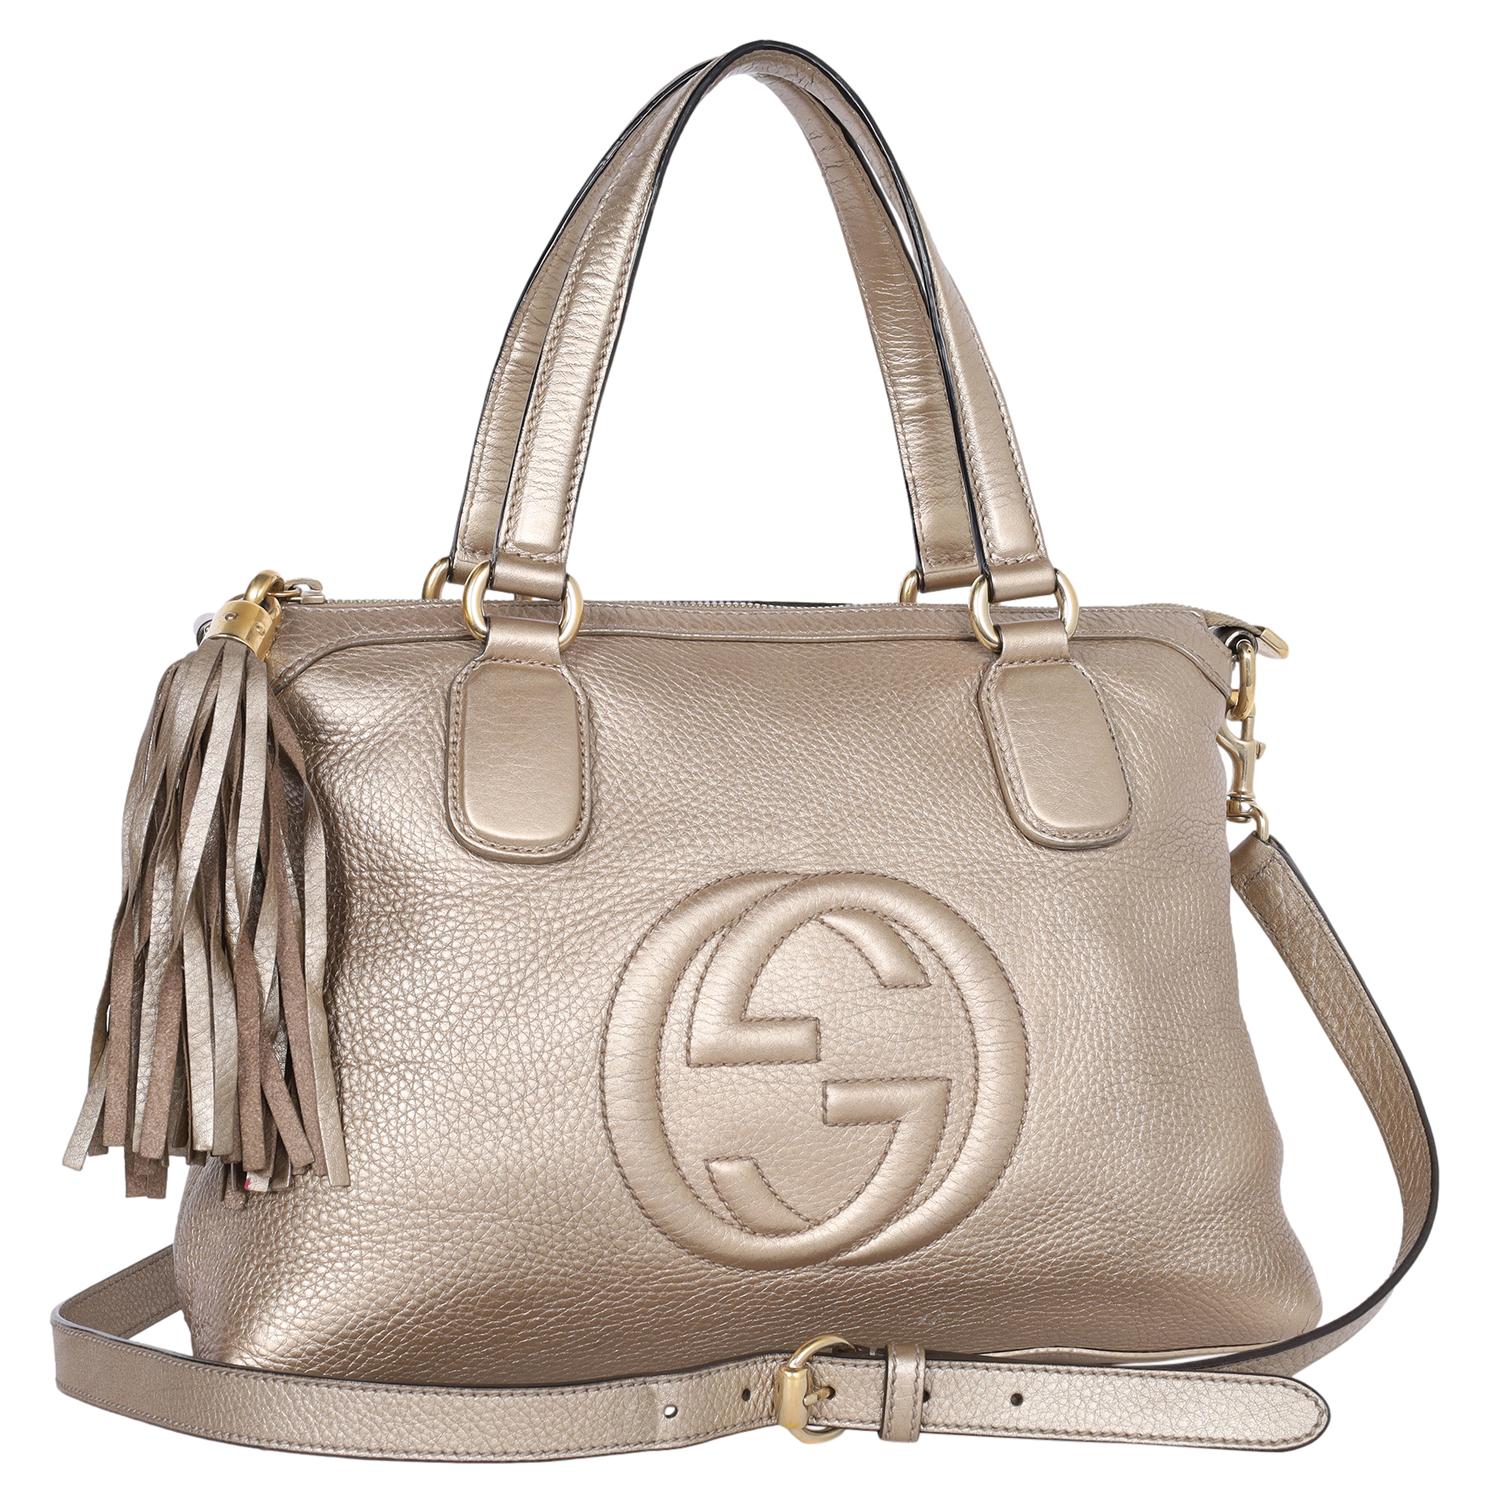 Authentische, gebrauchte Gucci GG Soho Gold Leder Crossbody Bag. Dieser Klassiker von Gucci  Crossbody-Tasche aus Leder ist die perfekte Tasche für jeden Tag. Mit GG Logo auf der Vorderseite, Reißverschluss oben mit Fransenlasche, geräumigem